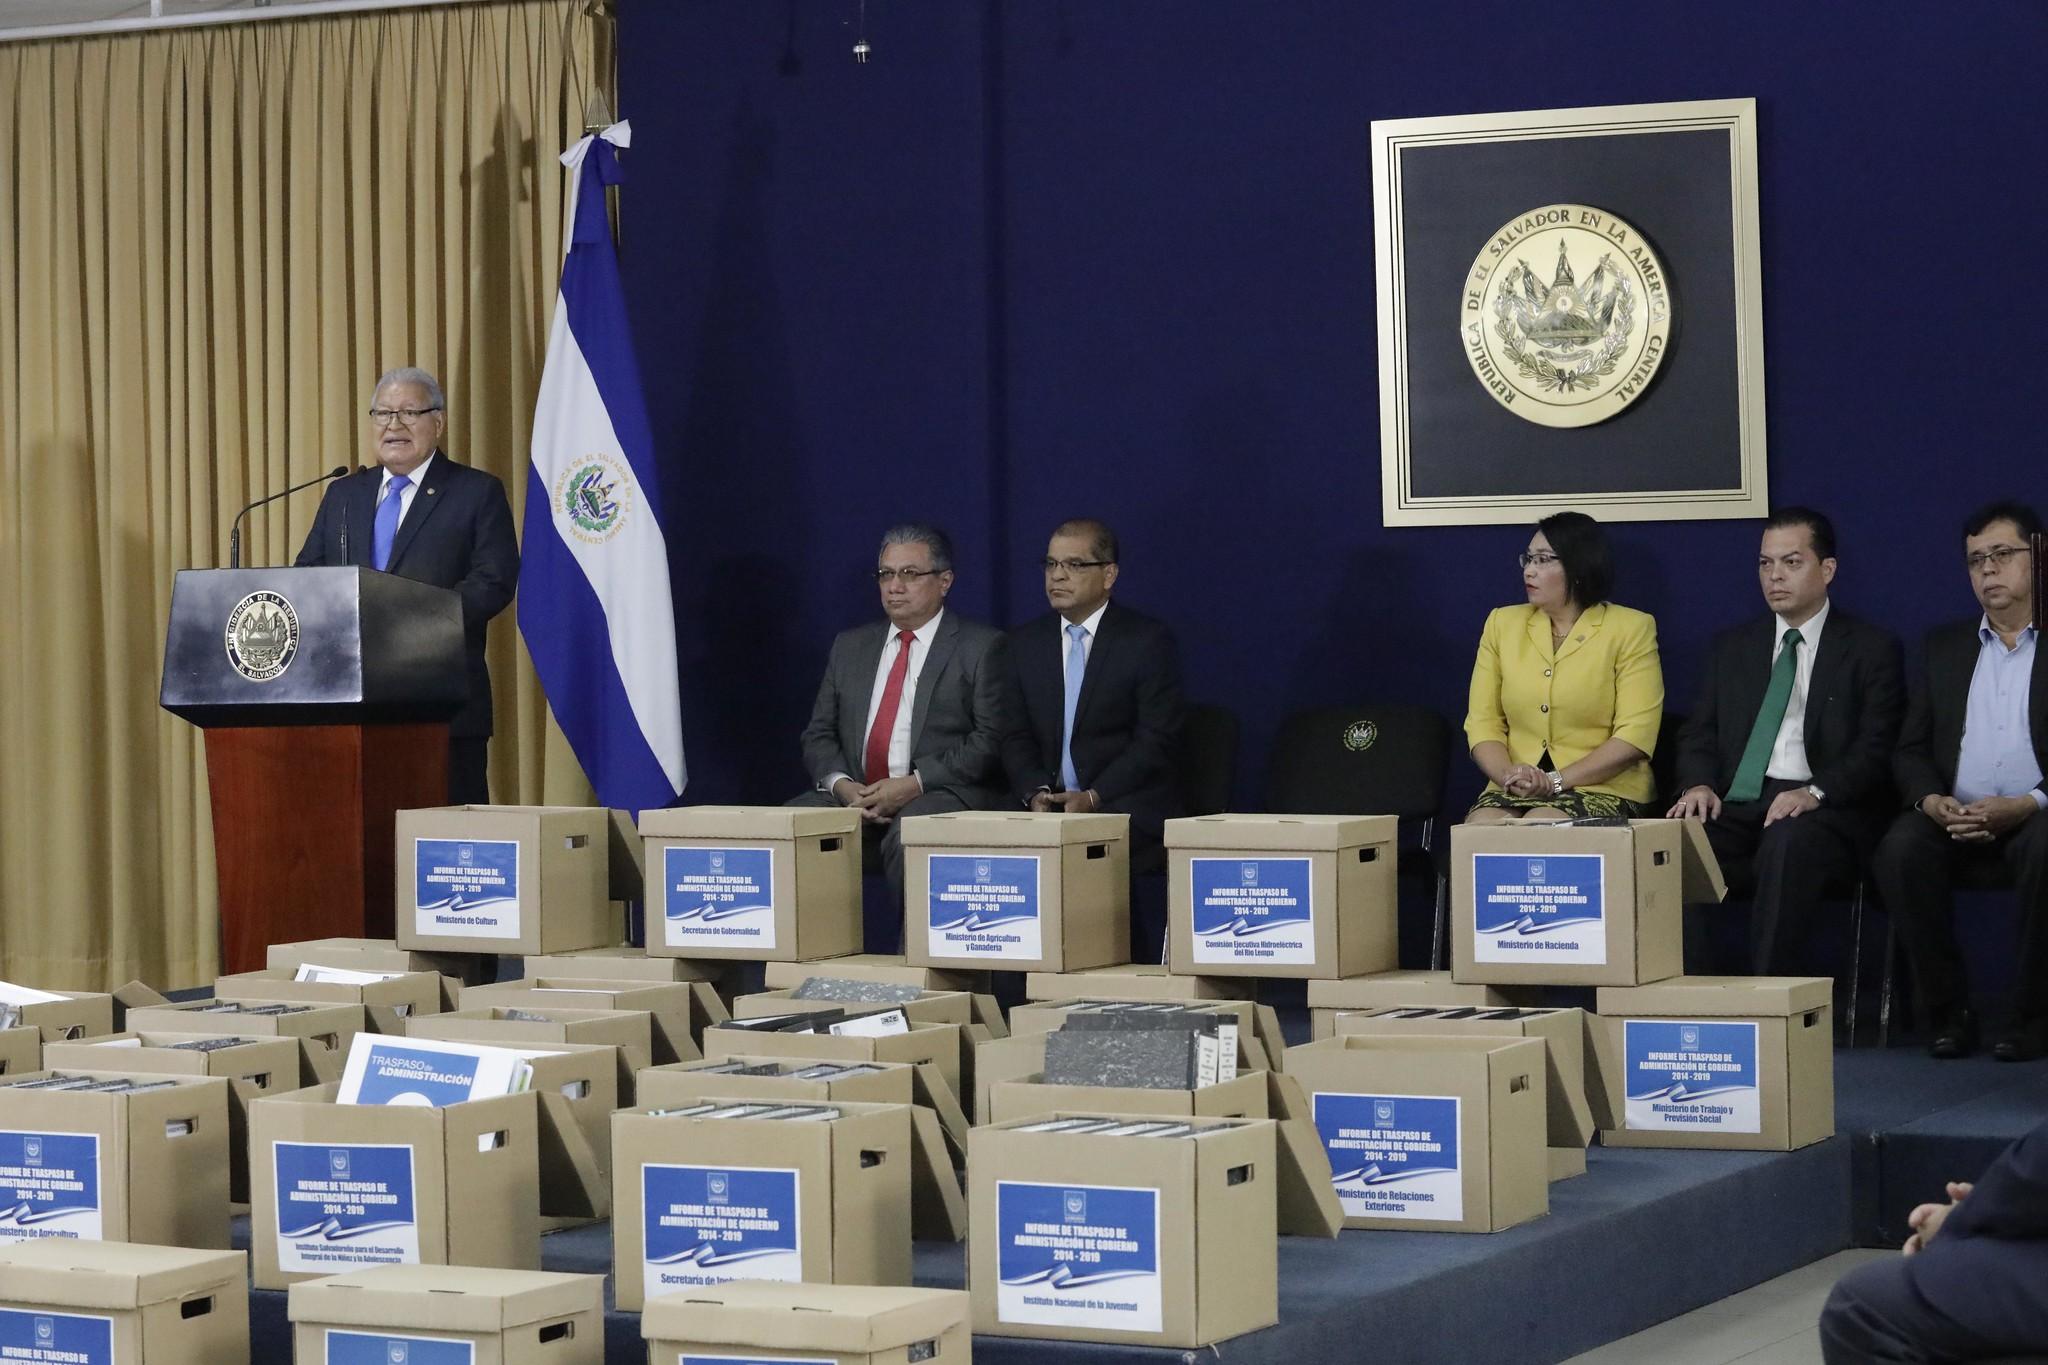 El 27 de mayo de 2019 se llevó a cabo un acto de entrega de 38 cajas de documentos. Desde el 15 de febrero se había pactado ese acto simbólico, en el que se excluyó plasmar un compromiso de la administración del presidente Sánchez Cerén de permitir auditorías a los gastos secretos.